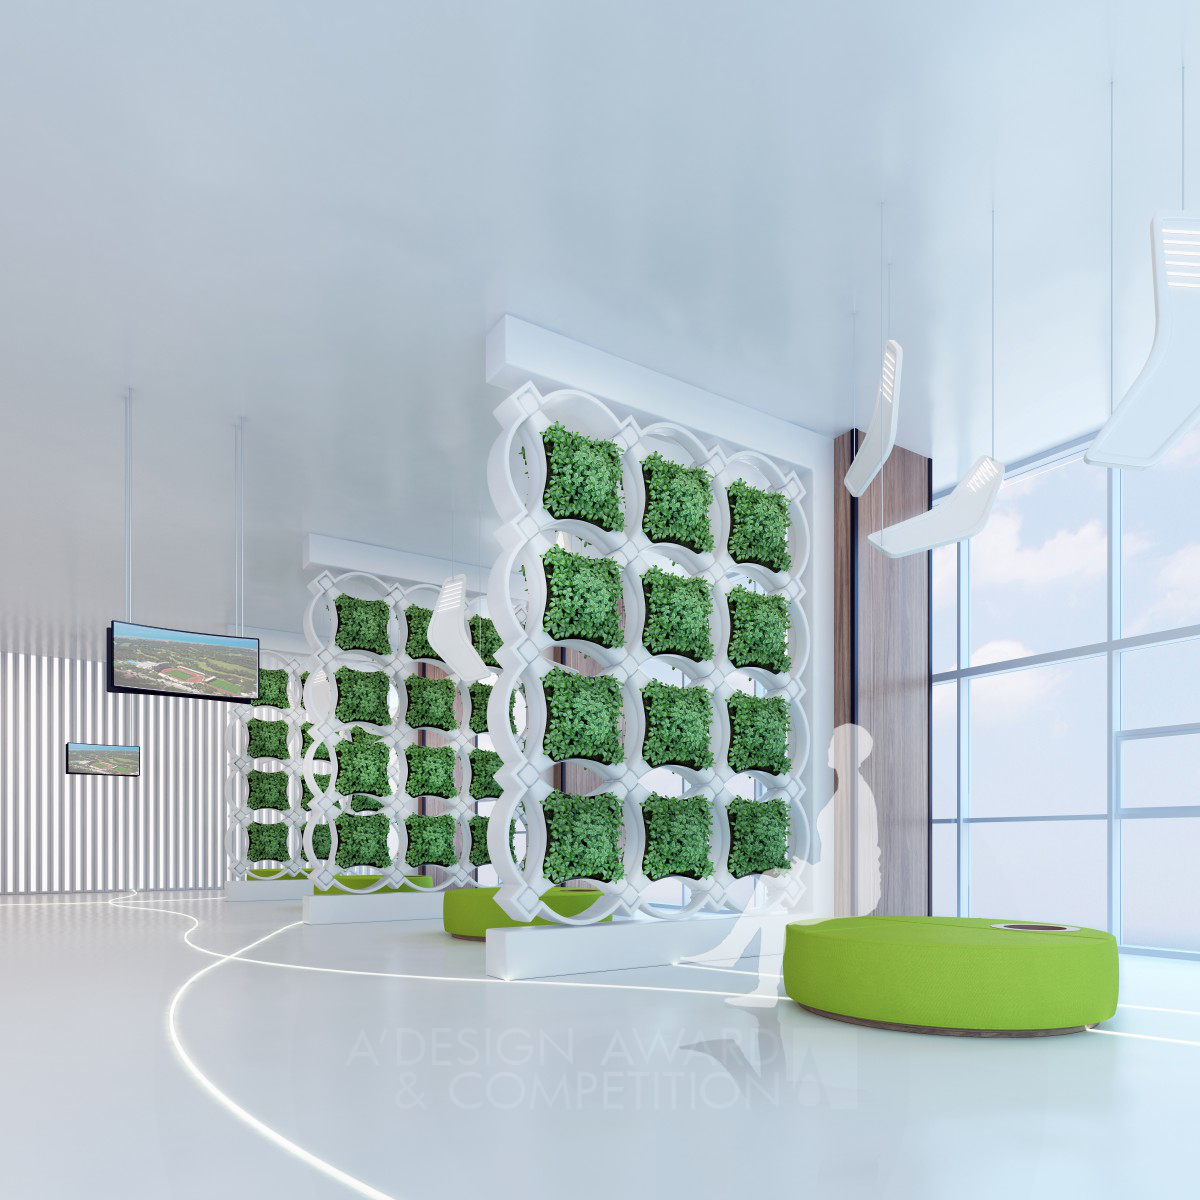 GreeneryPann Green interior panel by Nazlı Nazende Yıldırım